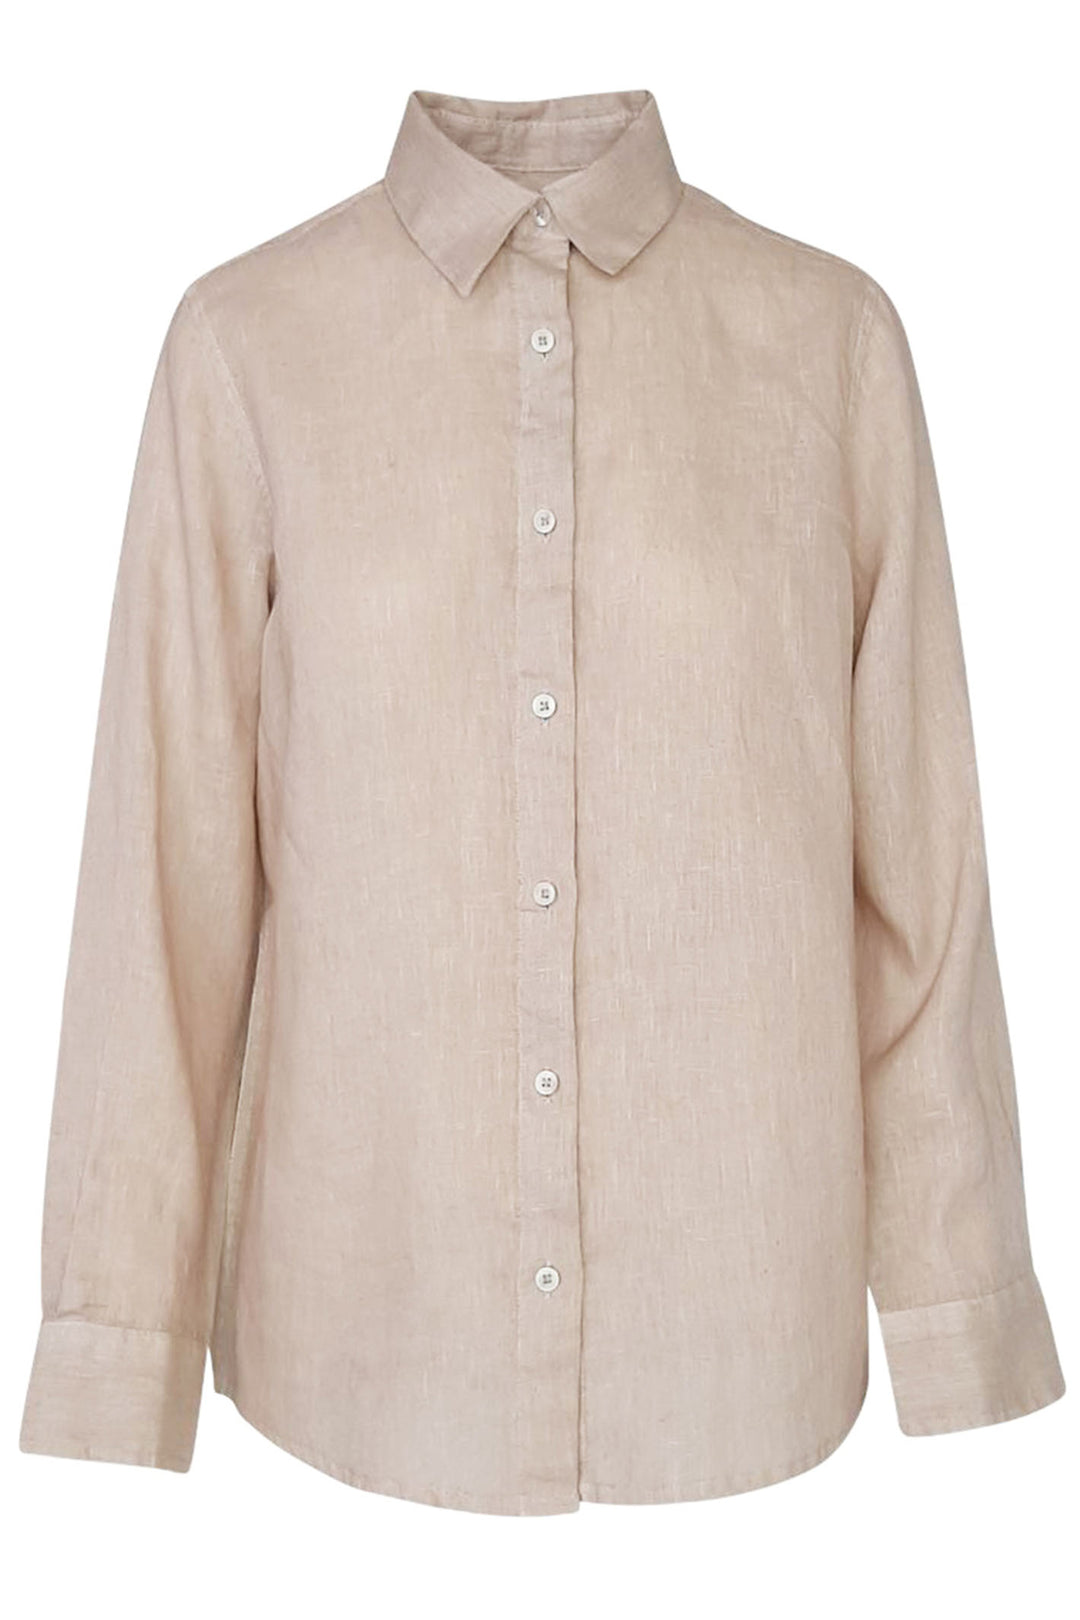 Haris Cotton 8007 Beach Sand Long Sleeve Linen Shirt - Shirley Allum Boutique